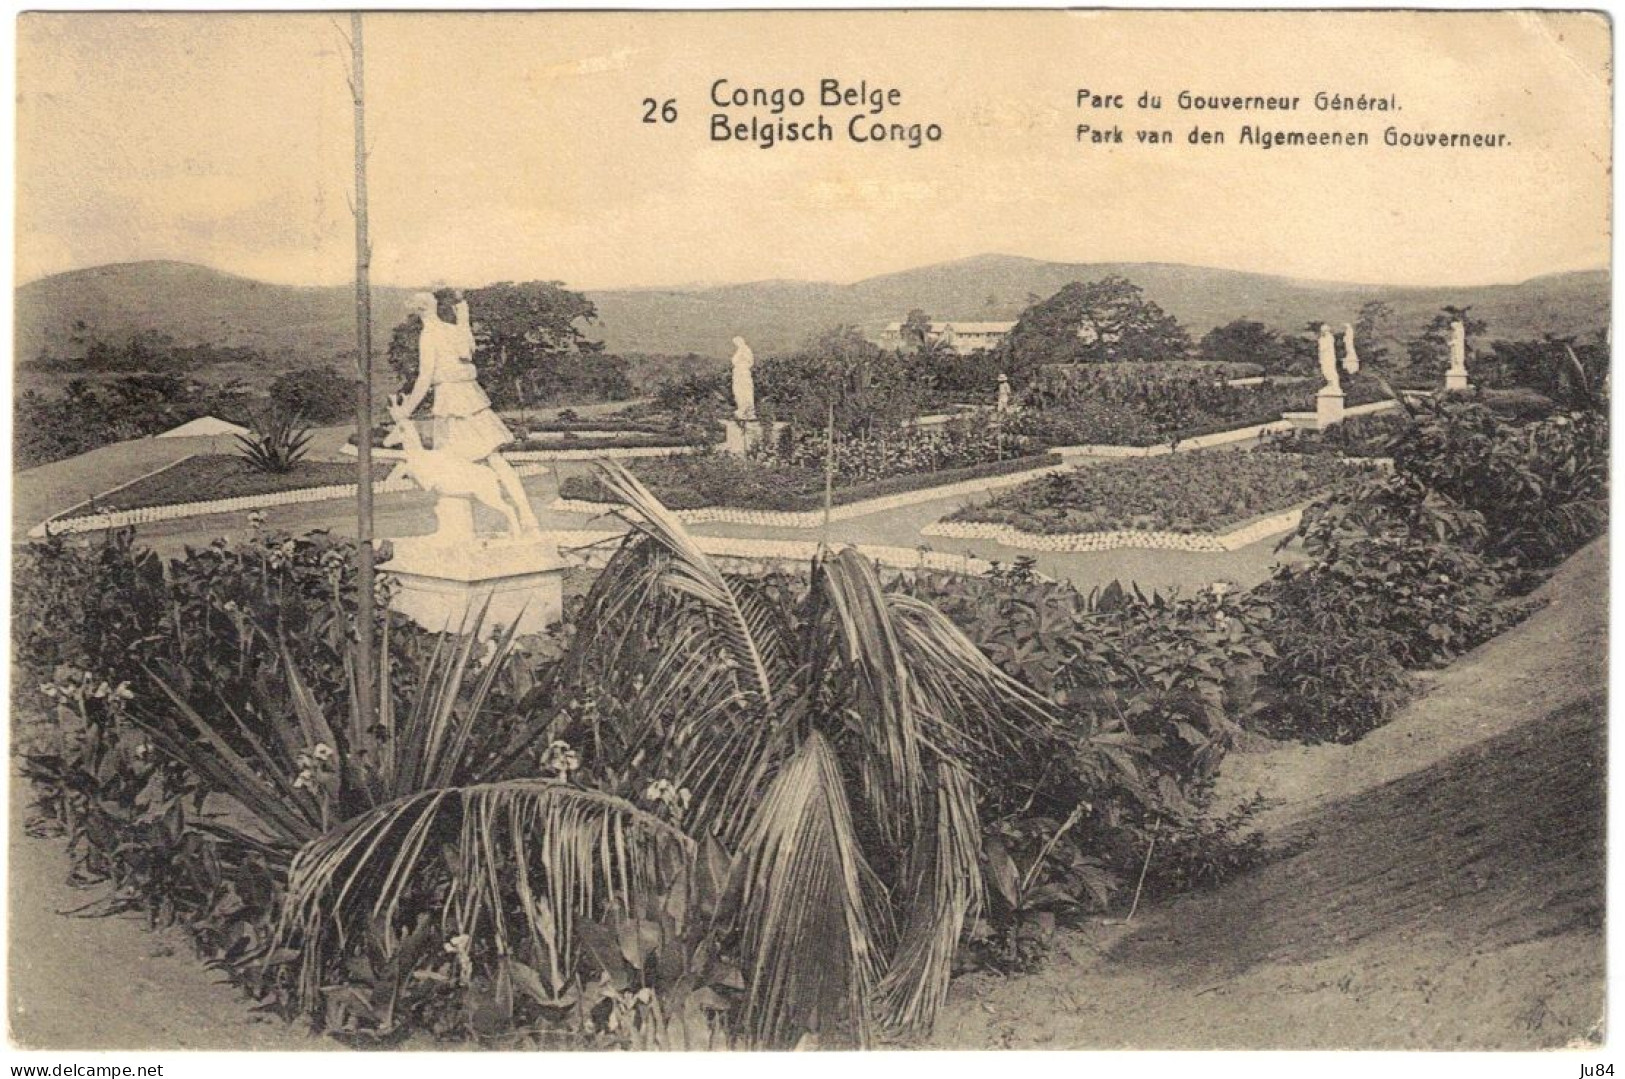 Afrique - Congo - Congo Belge - Parc Du Gouverneur Général - Entier Postal + Compélement D'affranchissement - 1921 - Briefe U. Dokumente